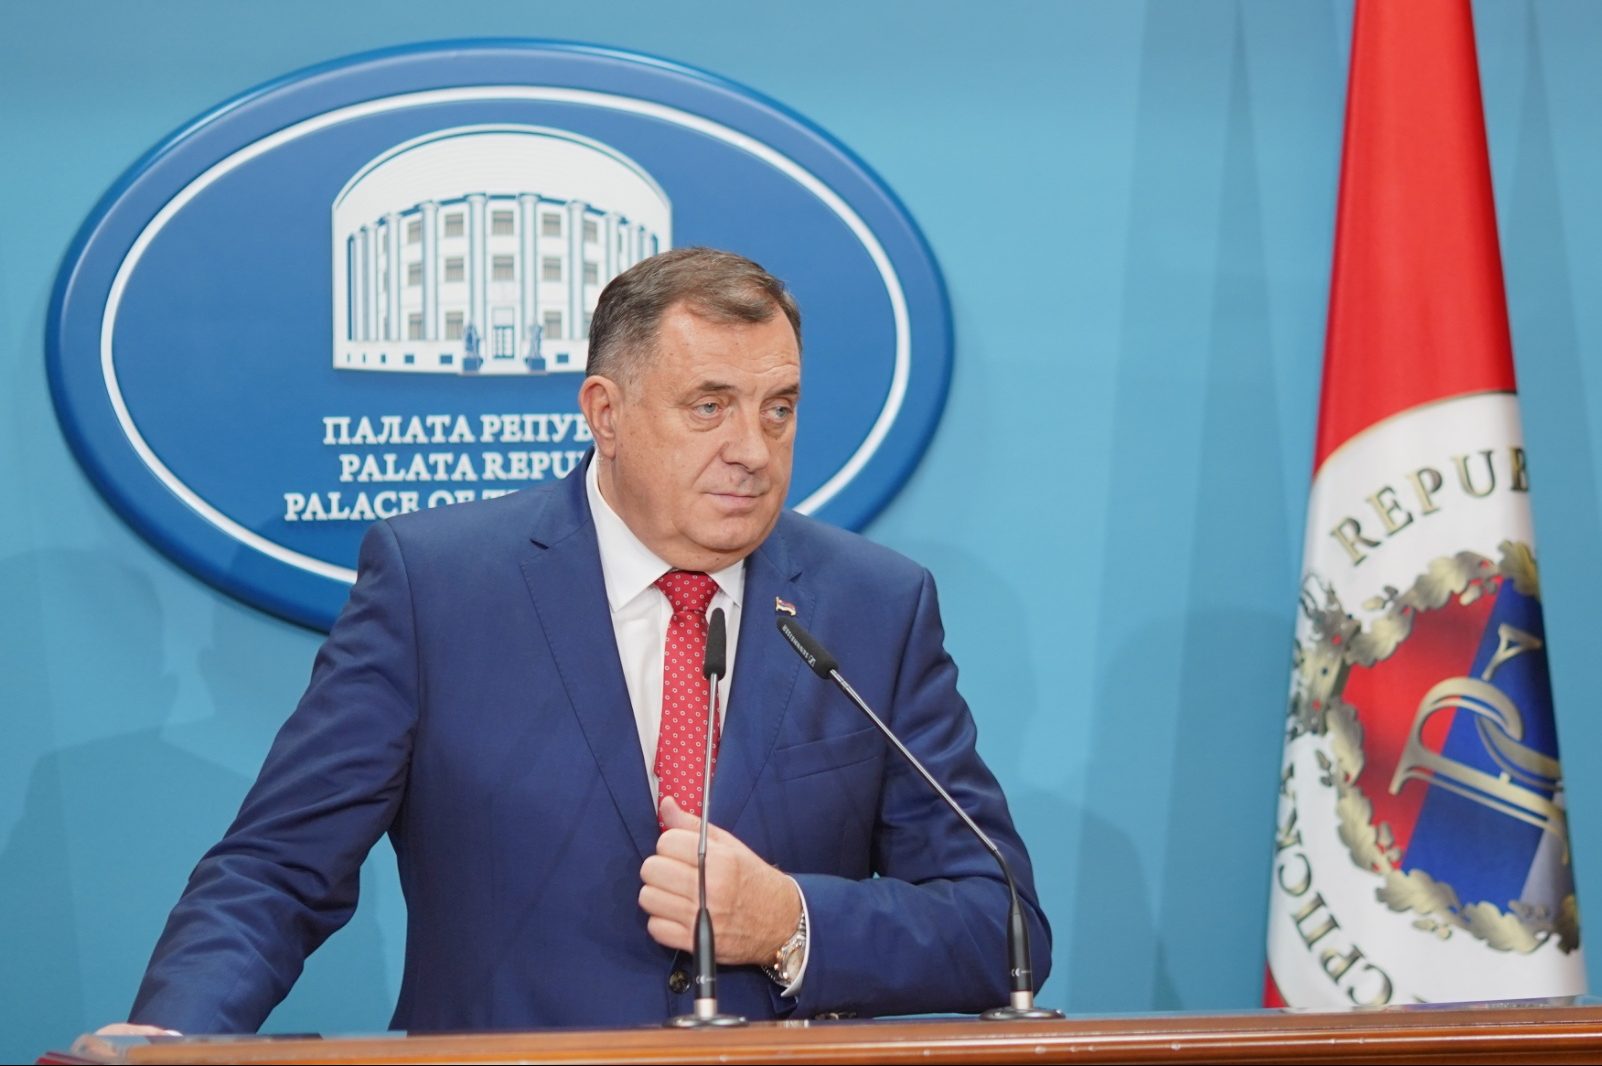 PAR DANA PRIJE TURNIRA Dodik: Otvaranje kompleksa za 12 dana